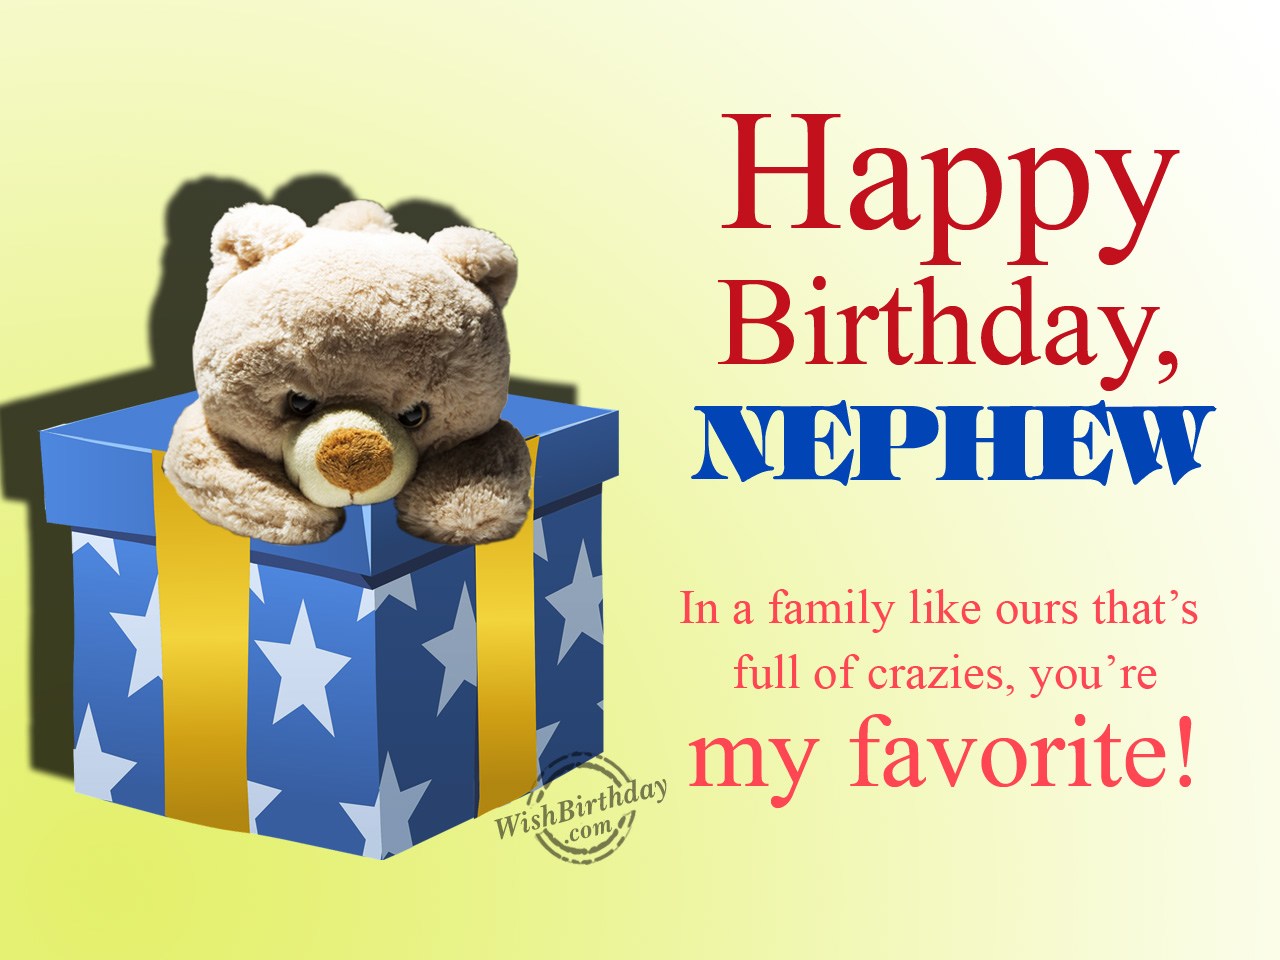 Birthday Wishes For Nephew From Aunt / Happy Birthday Nephew Christian ...